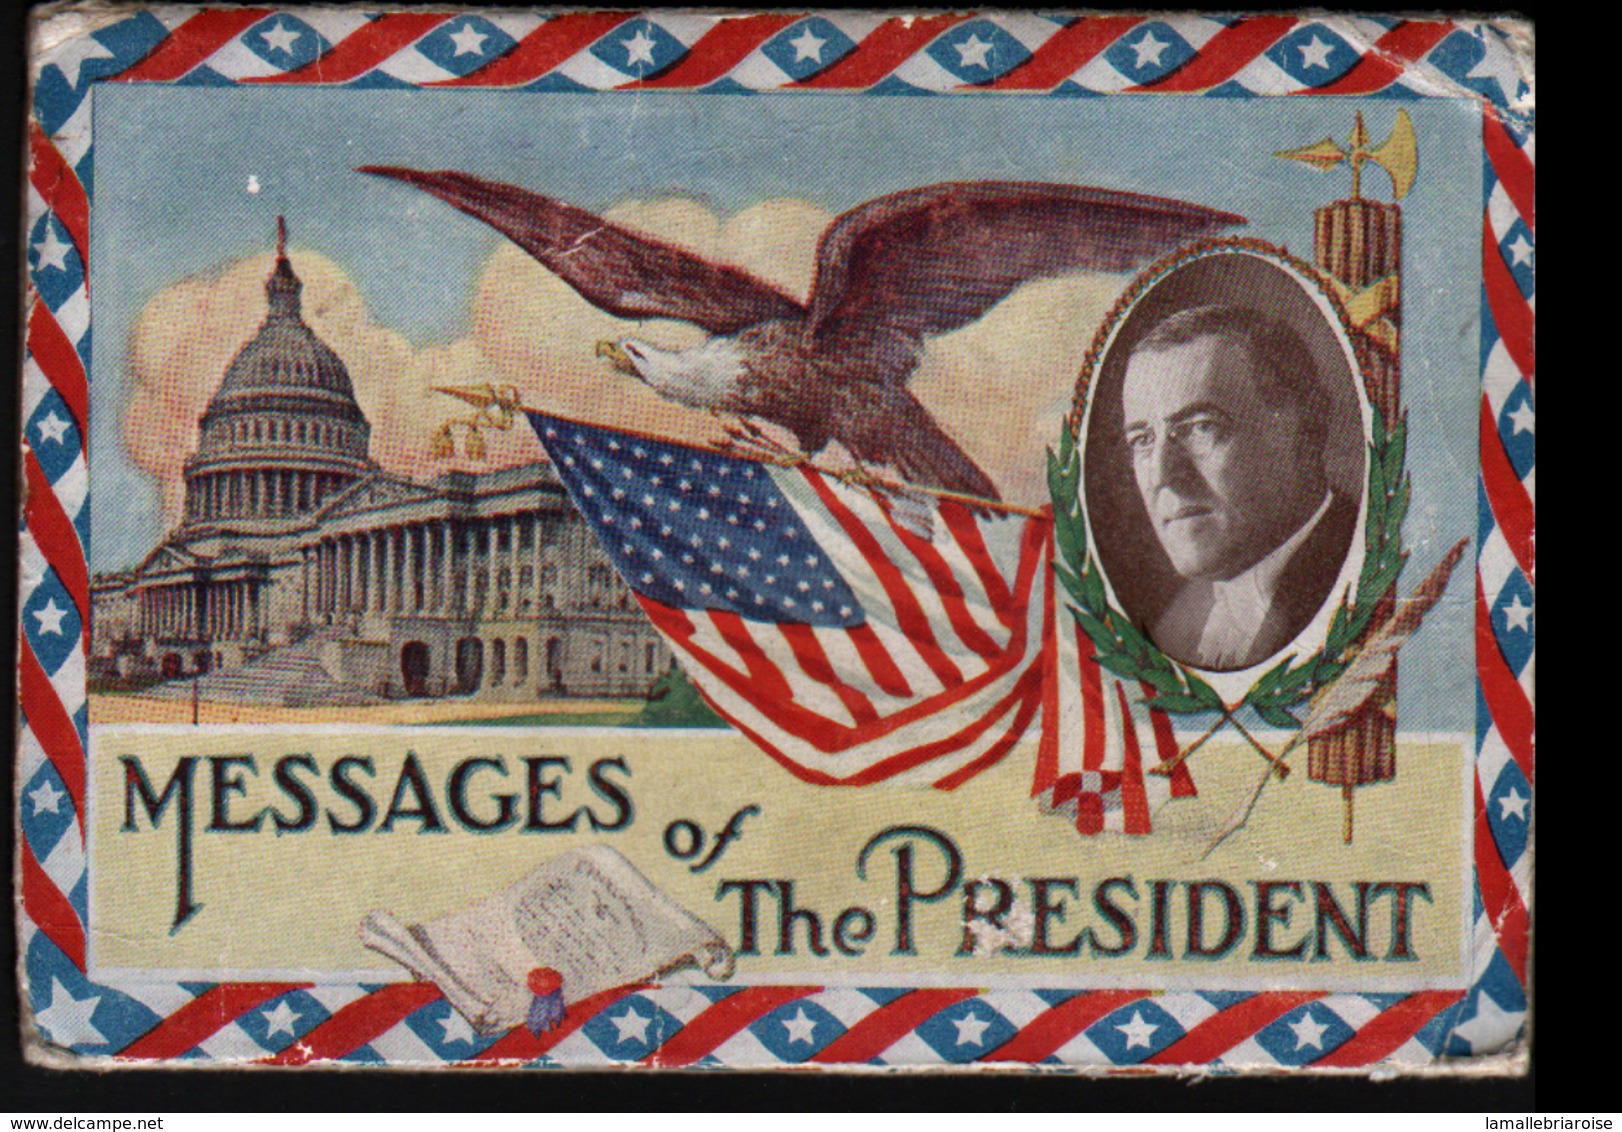 Etats-Unis D'Amerique, Messages Of The President, - Présidents